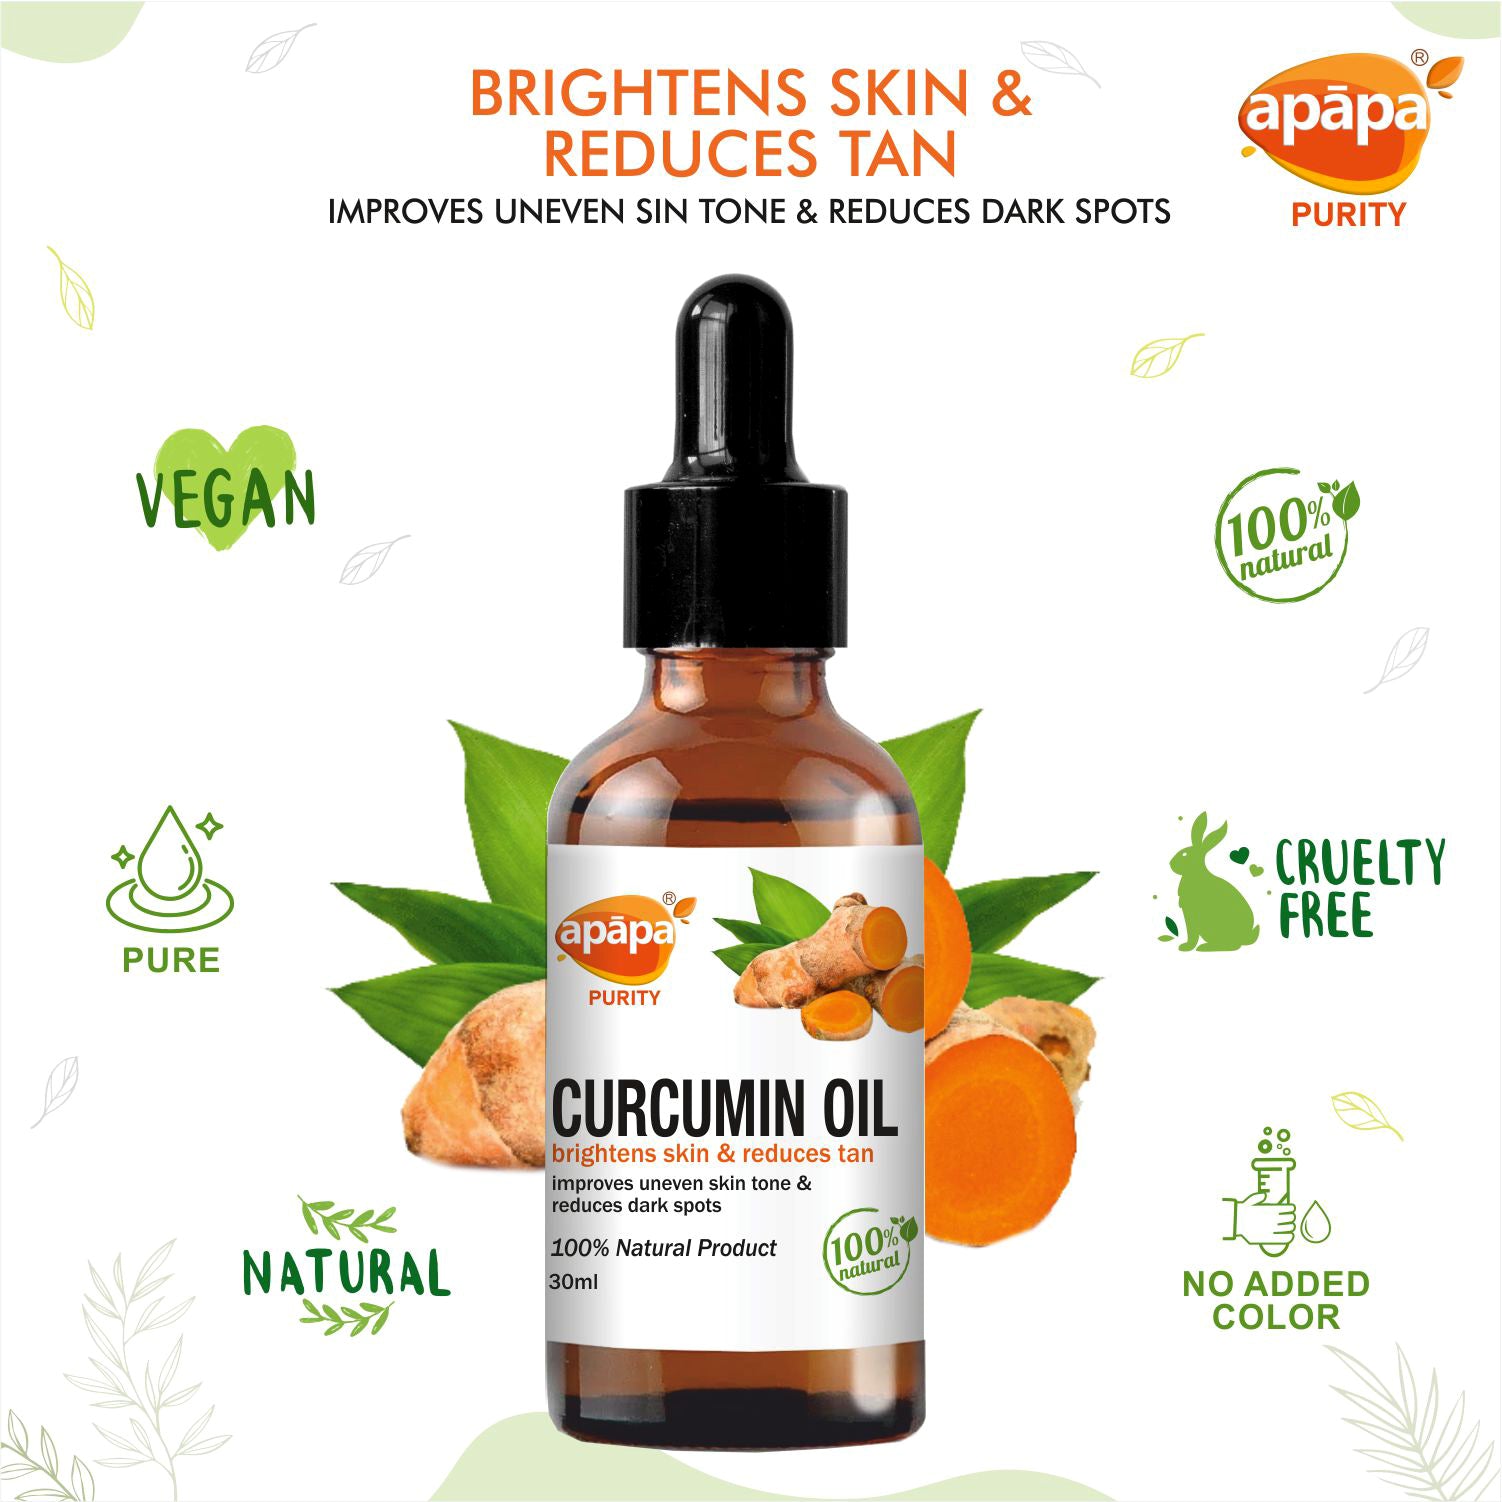 APĀPA Skin brightening Curcumin Oil